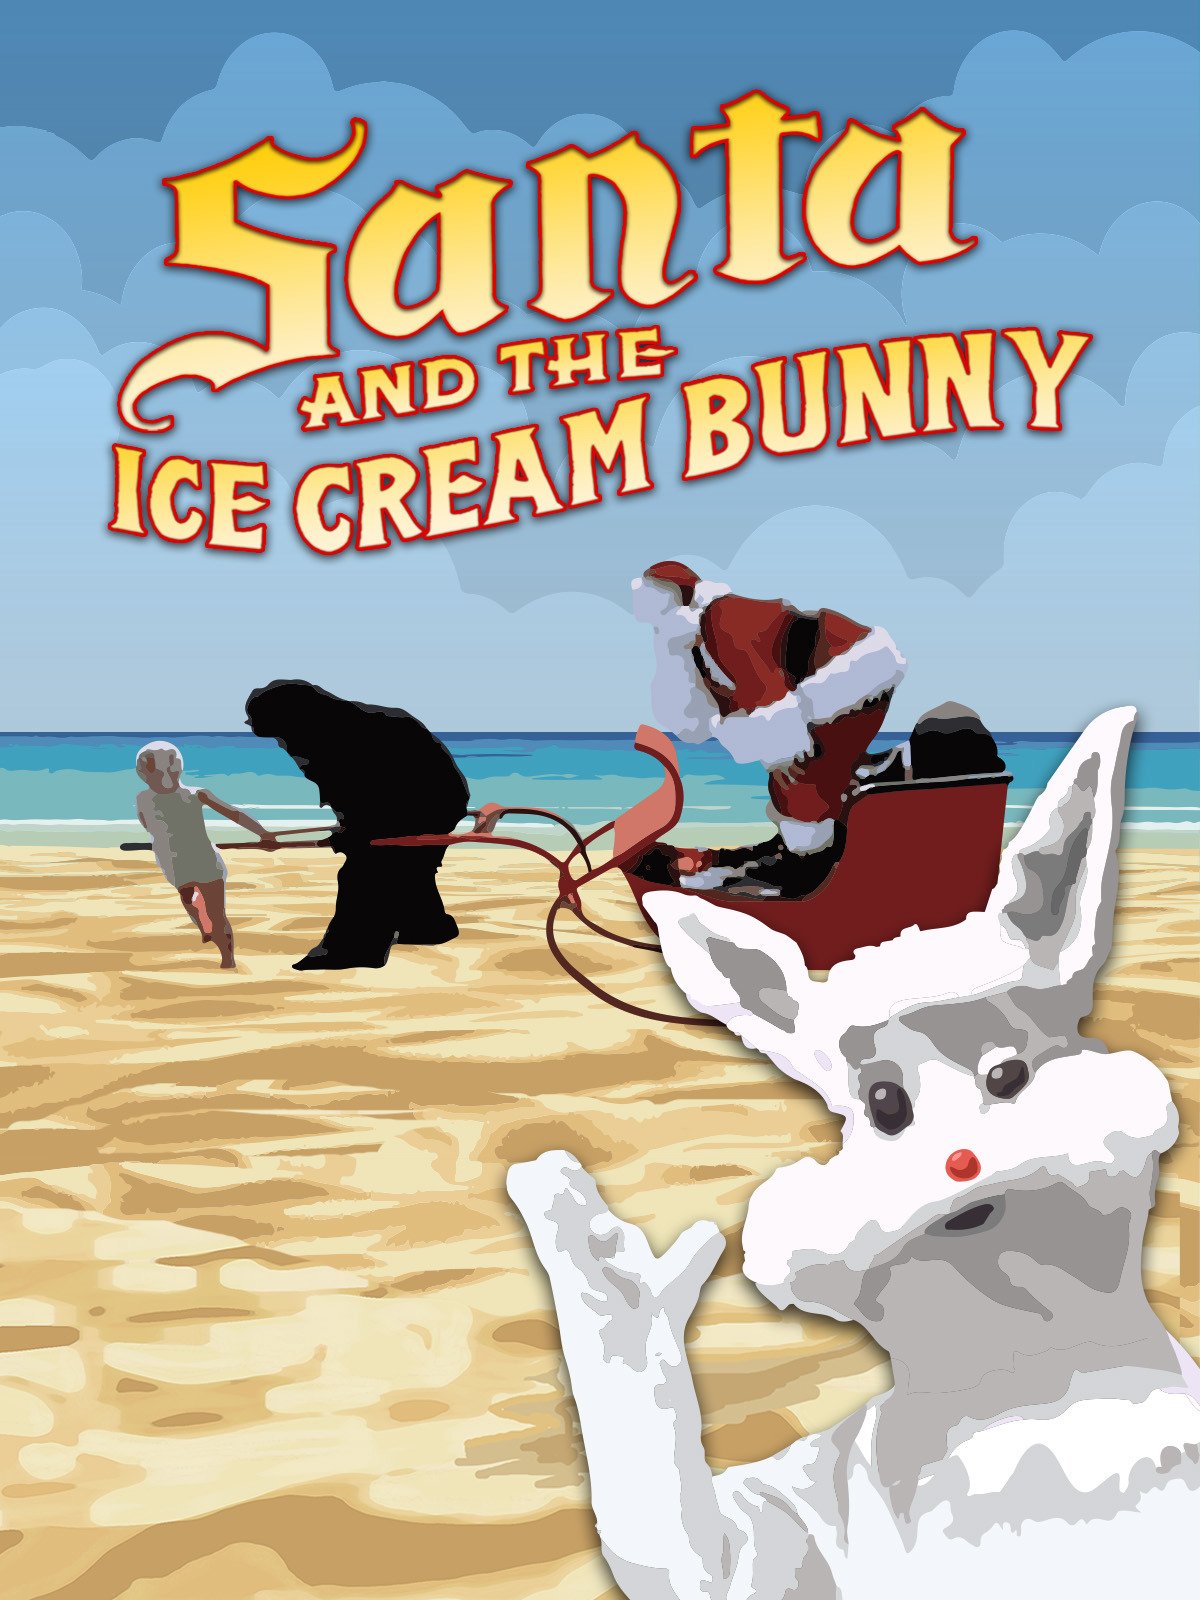 Постер к фильму «Санта и кролик из мороженого» (Santa and the Ice Cream Bunny), 1972